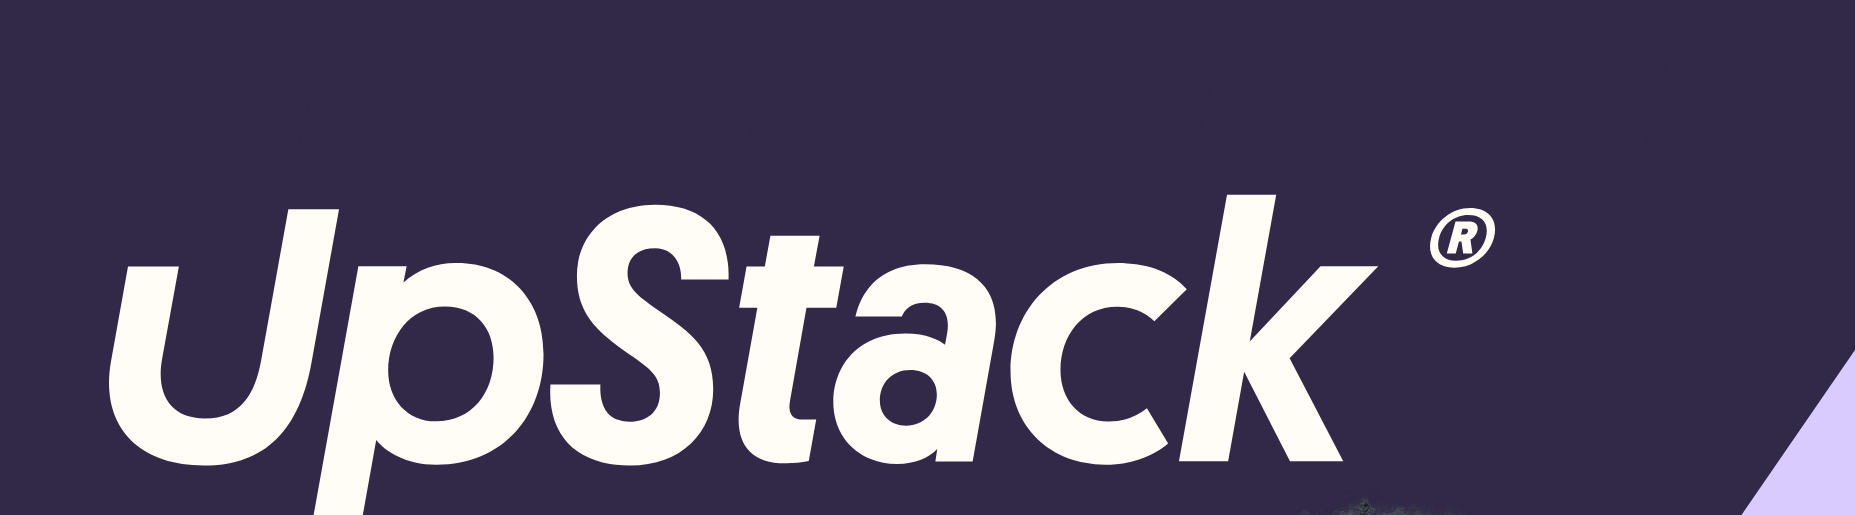 UpStack-Full-Logo